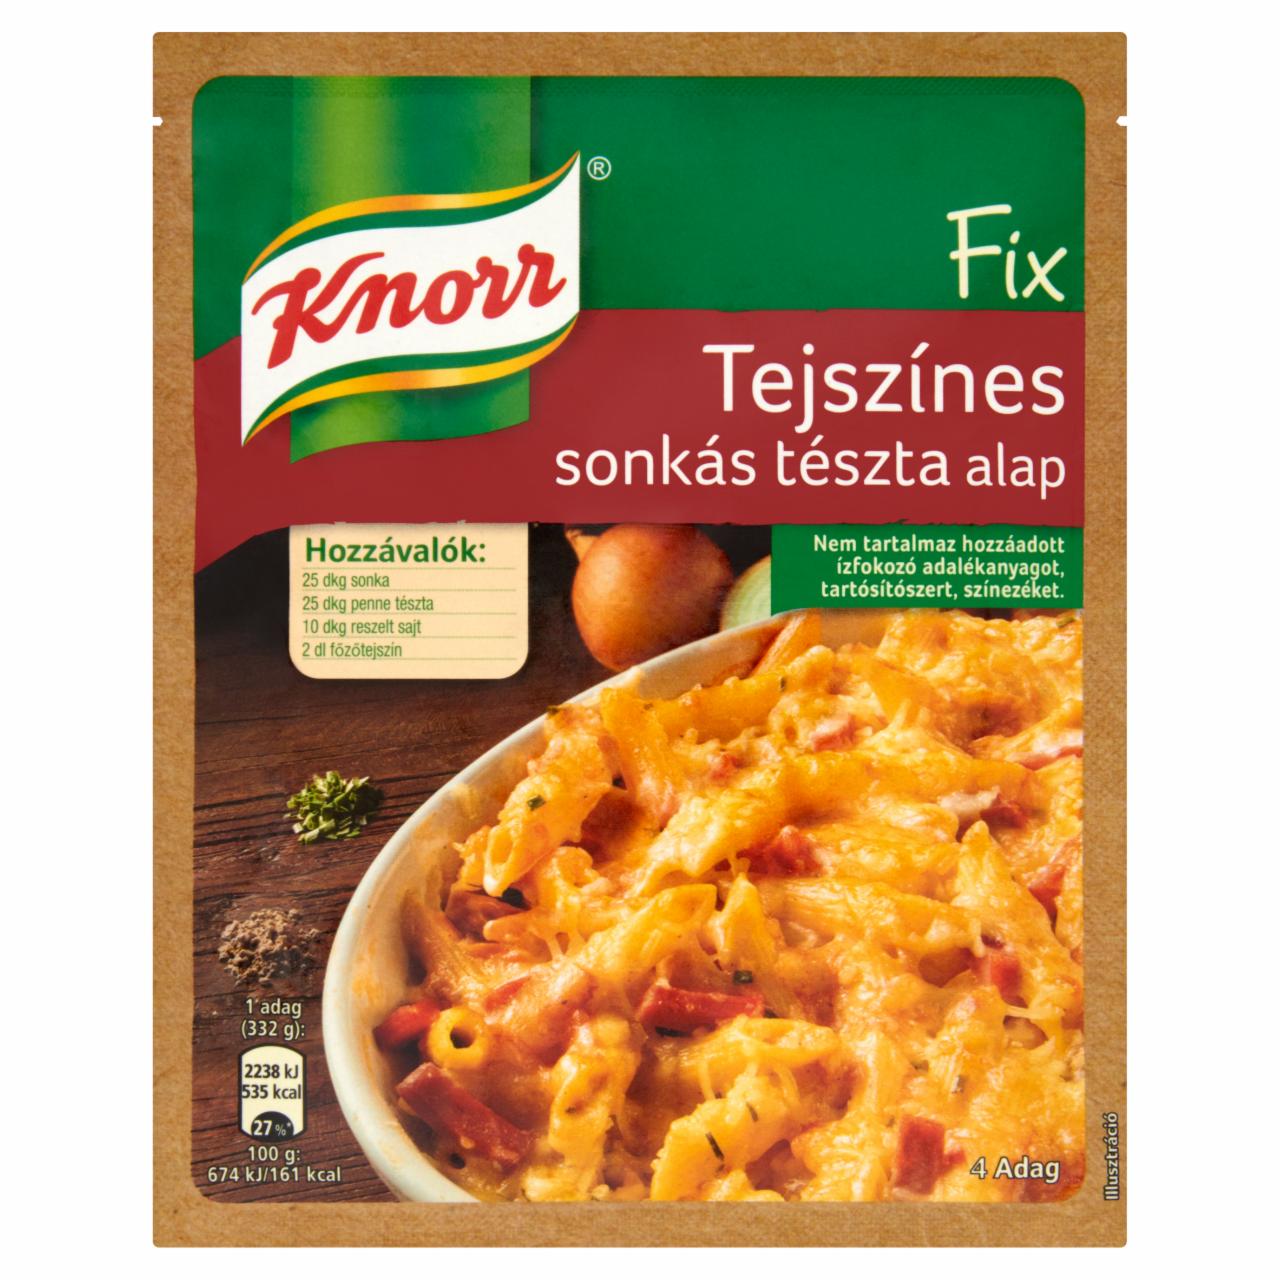 Képek - Knorr Fix tejszínes sonkás tészta alap 56 g